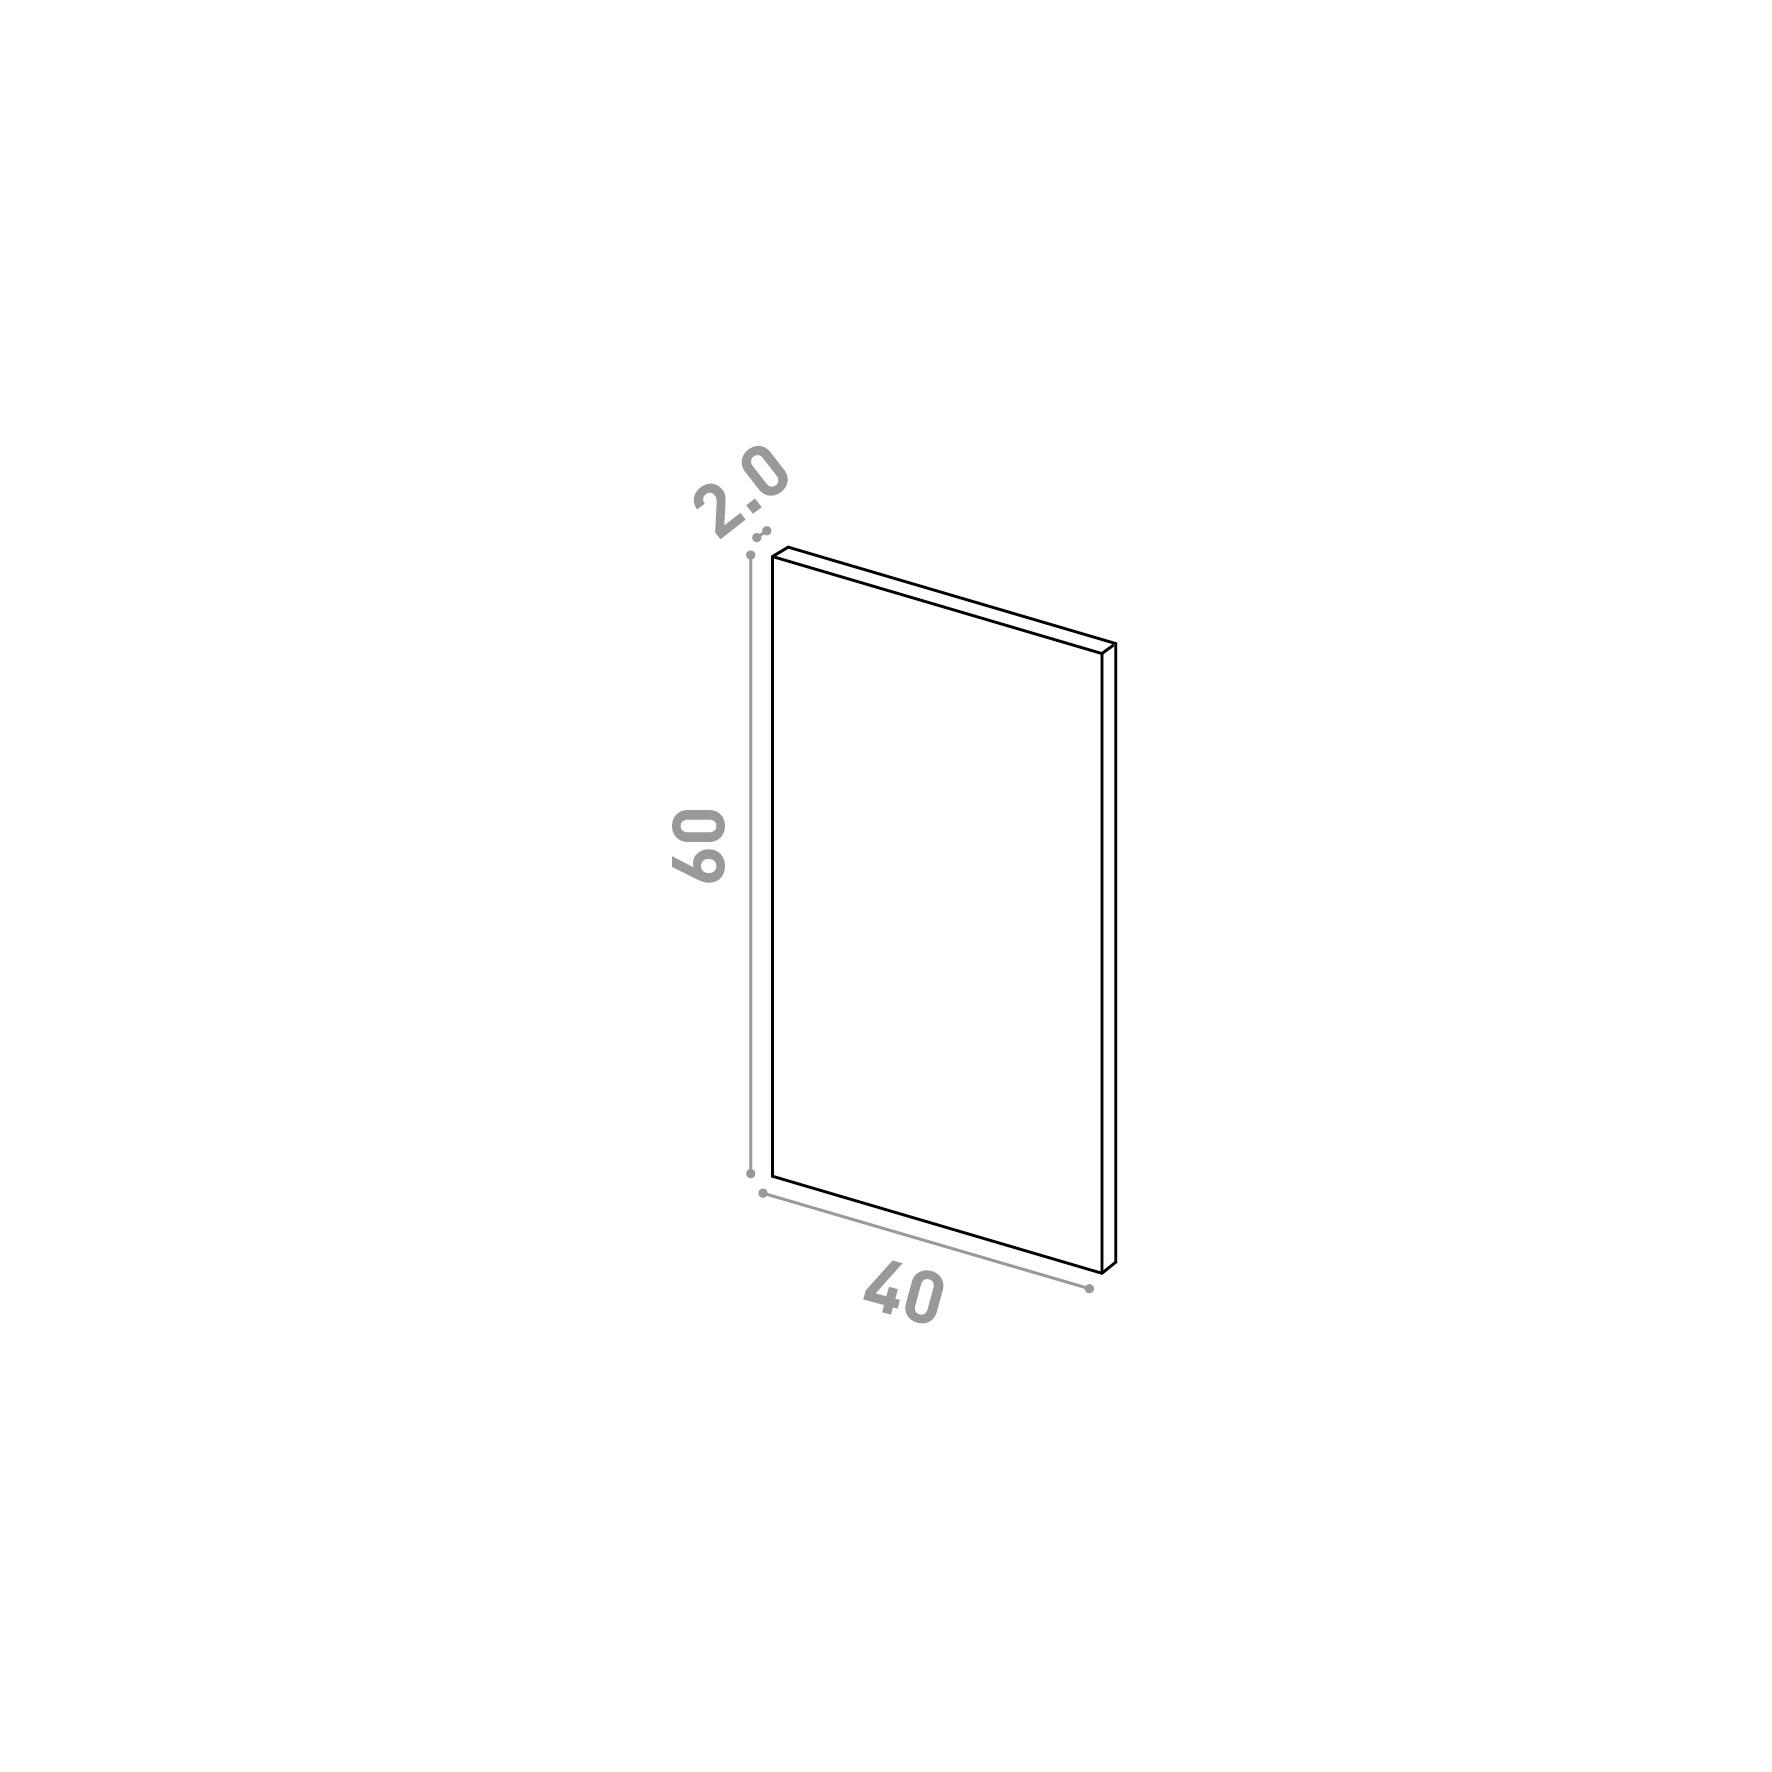 Door 40x60cm | Straight design | Matte lacquered